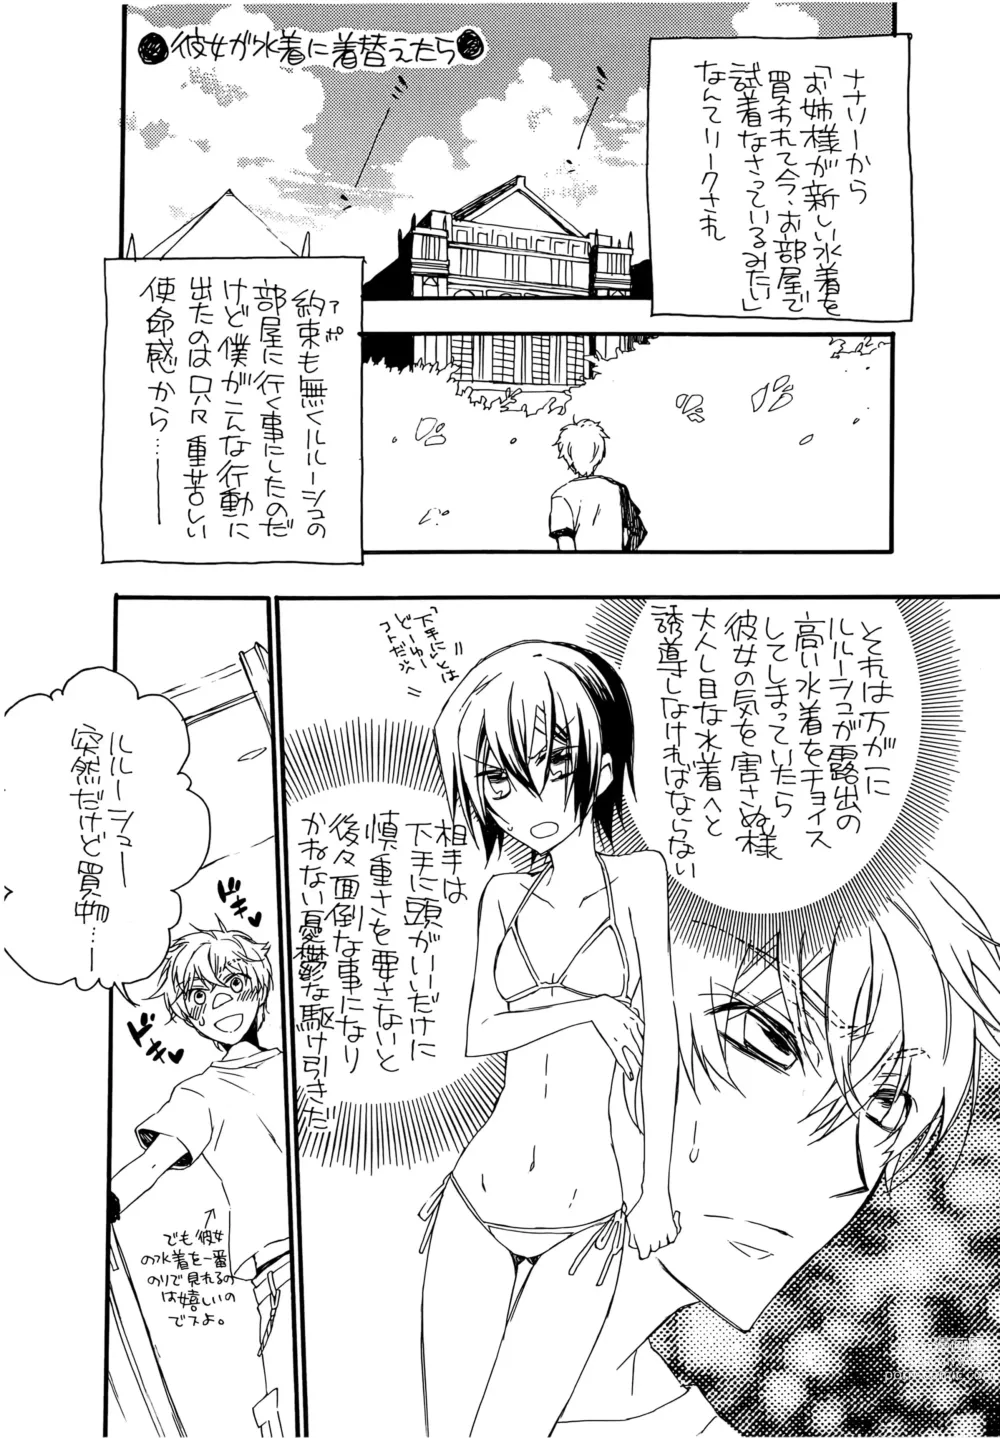 Page 4 of doujinshi Natsu Nyota Side Peta.